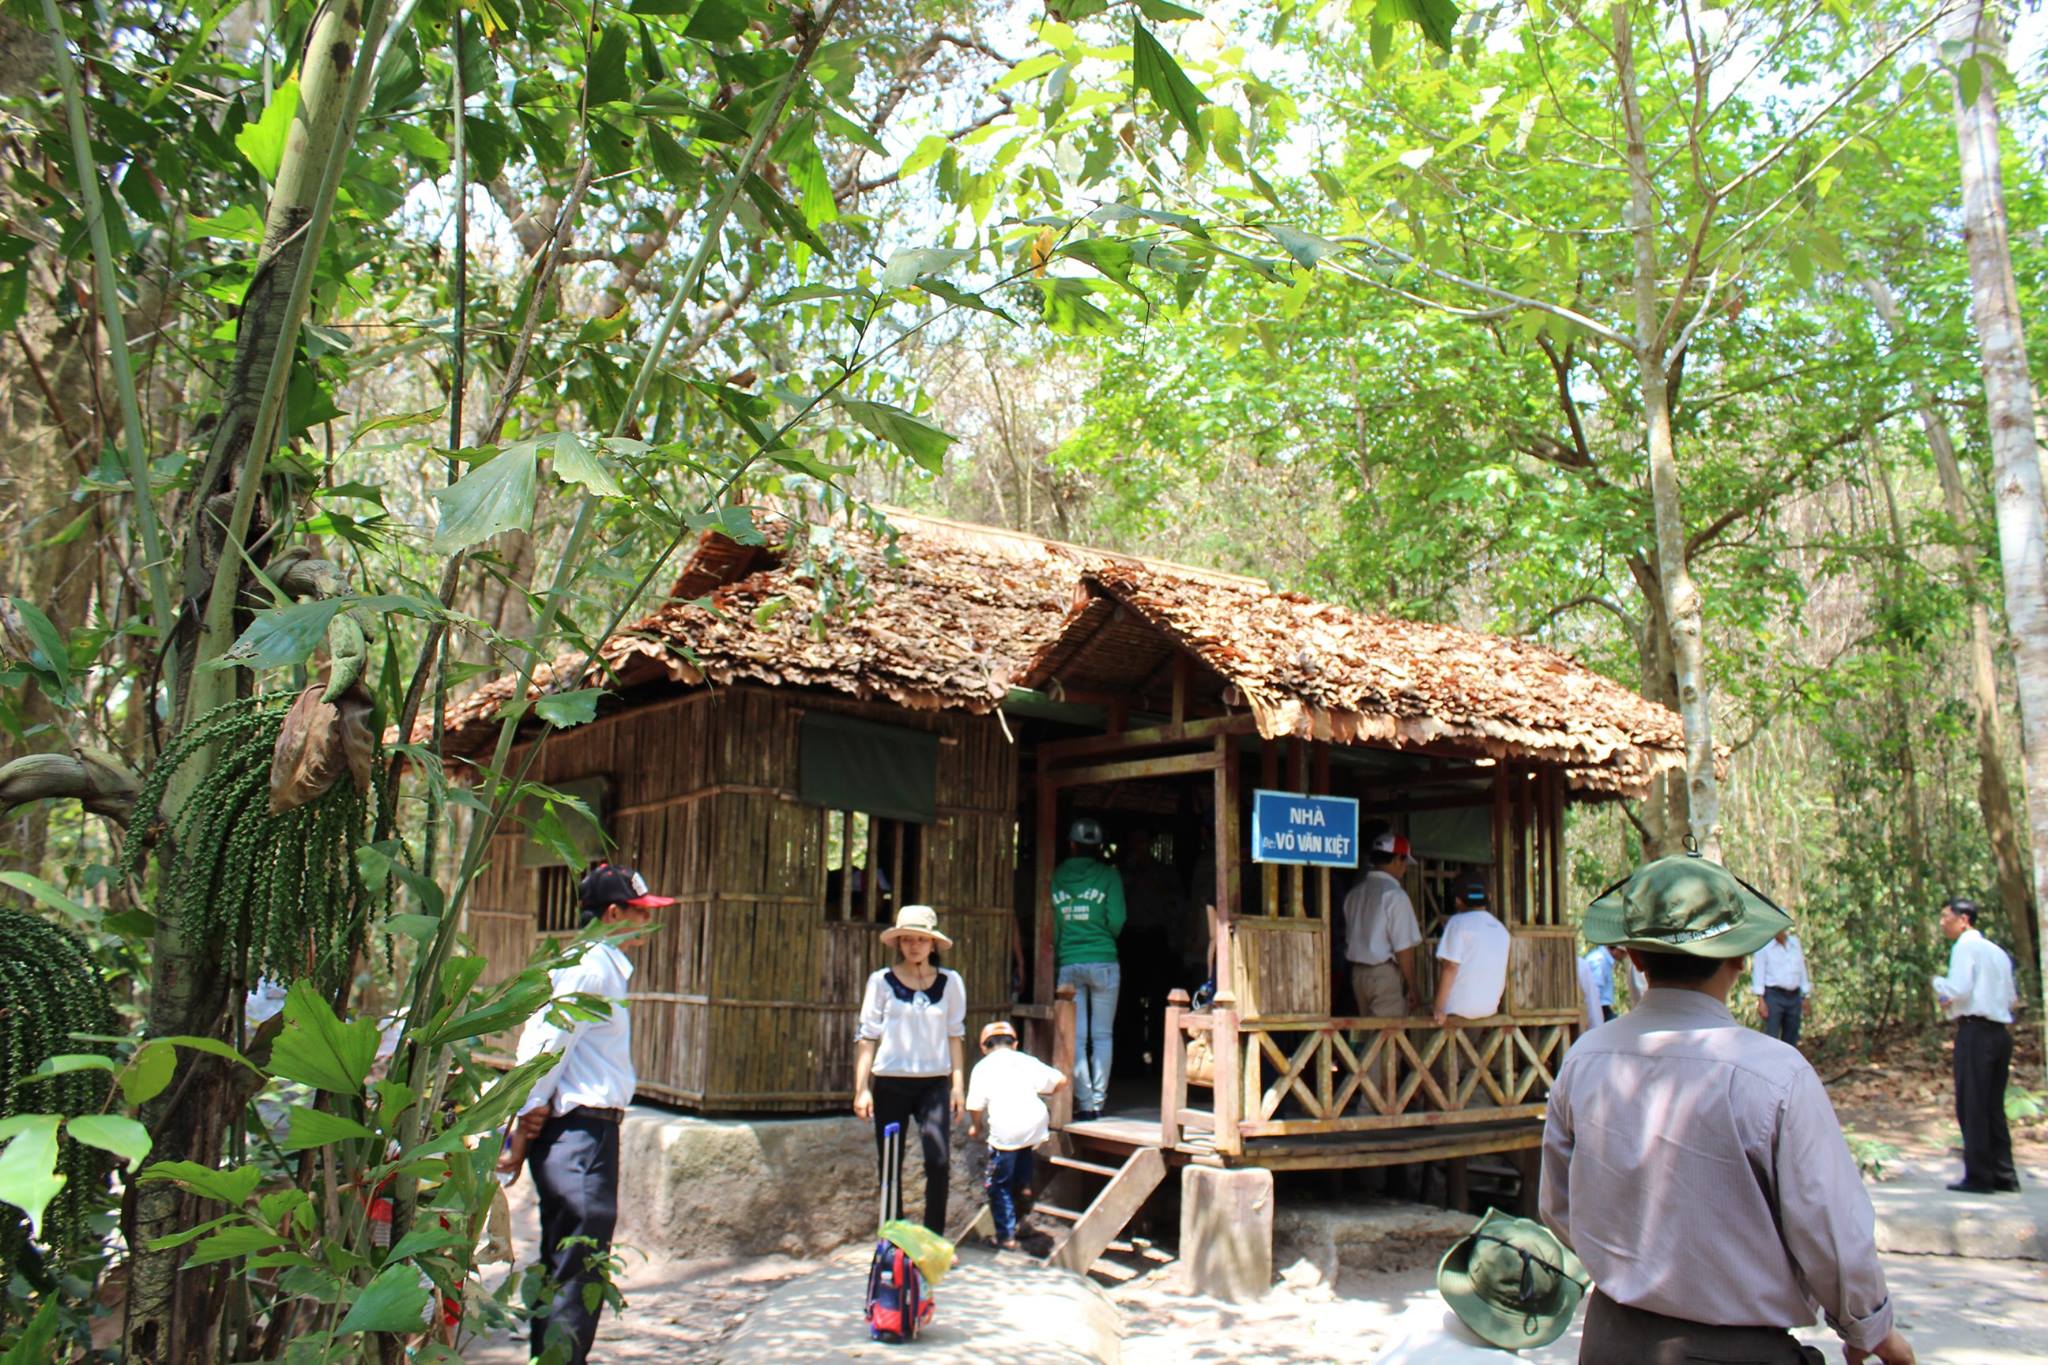 Khám phá Căn cứ Trung ương Cục miền Nam, một địa điểm du lịch về nguồn vô  cùng ý nghĩa tại Tây Ninh | khamphatayninh.vn